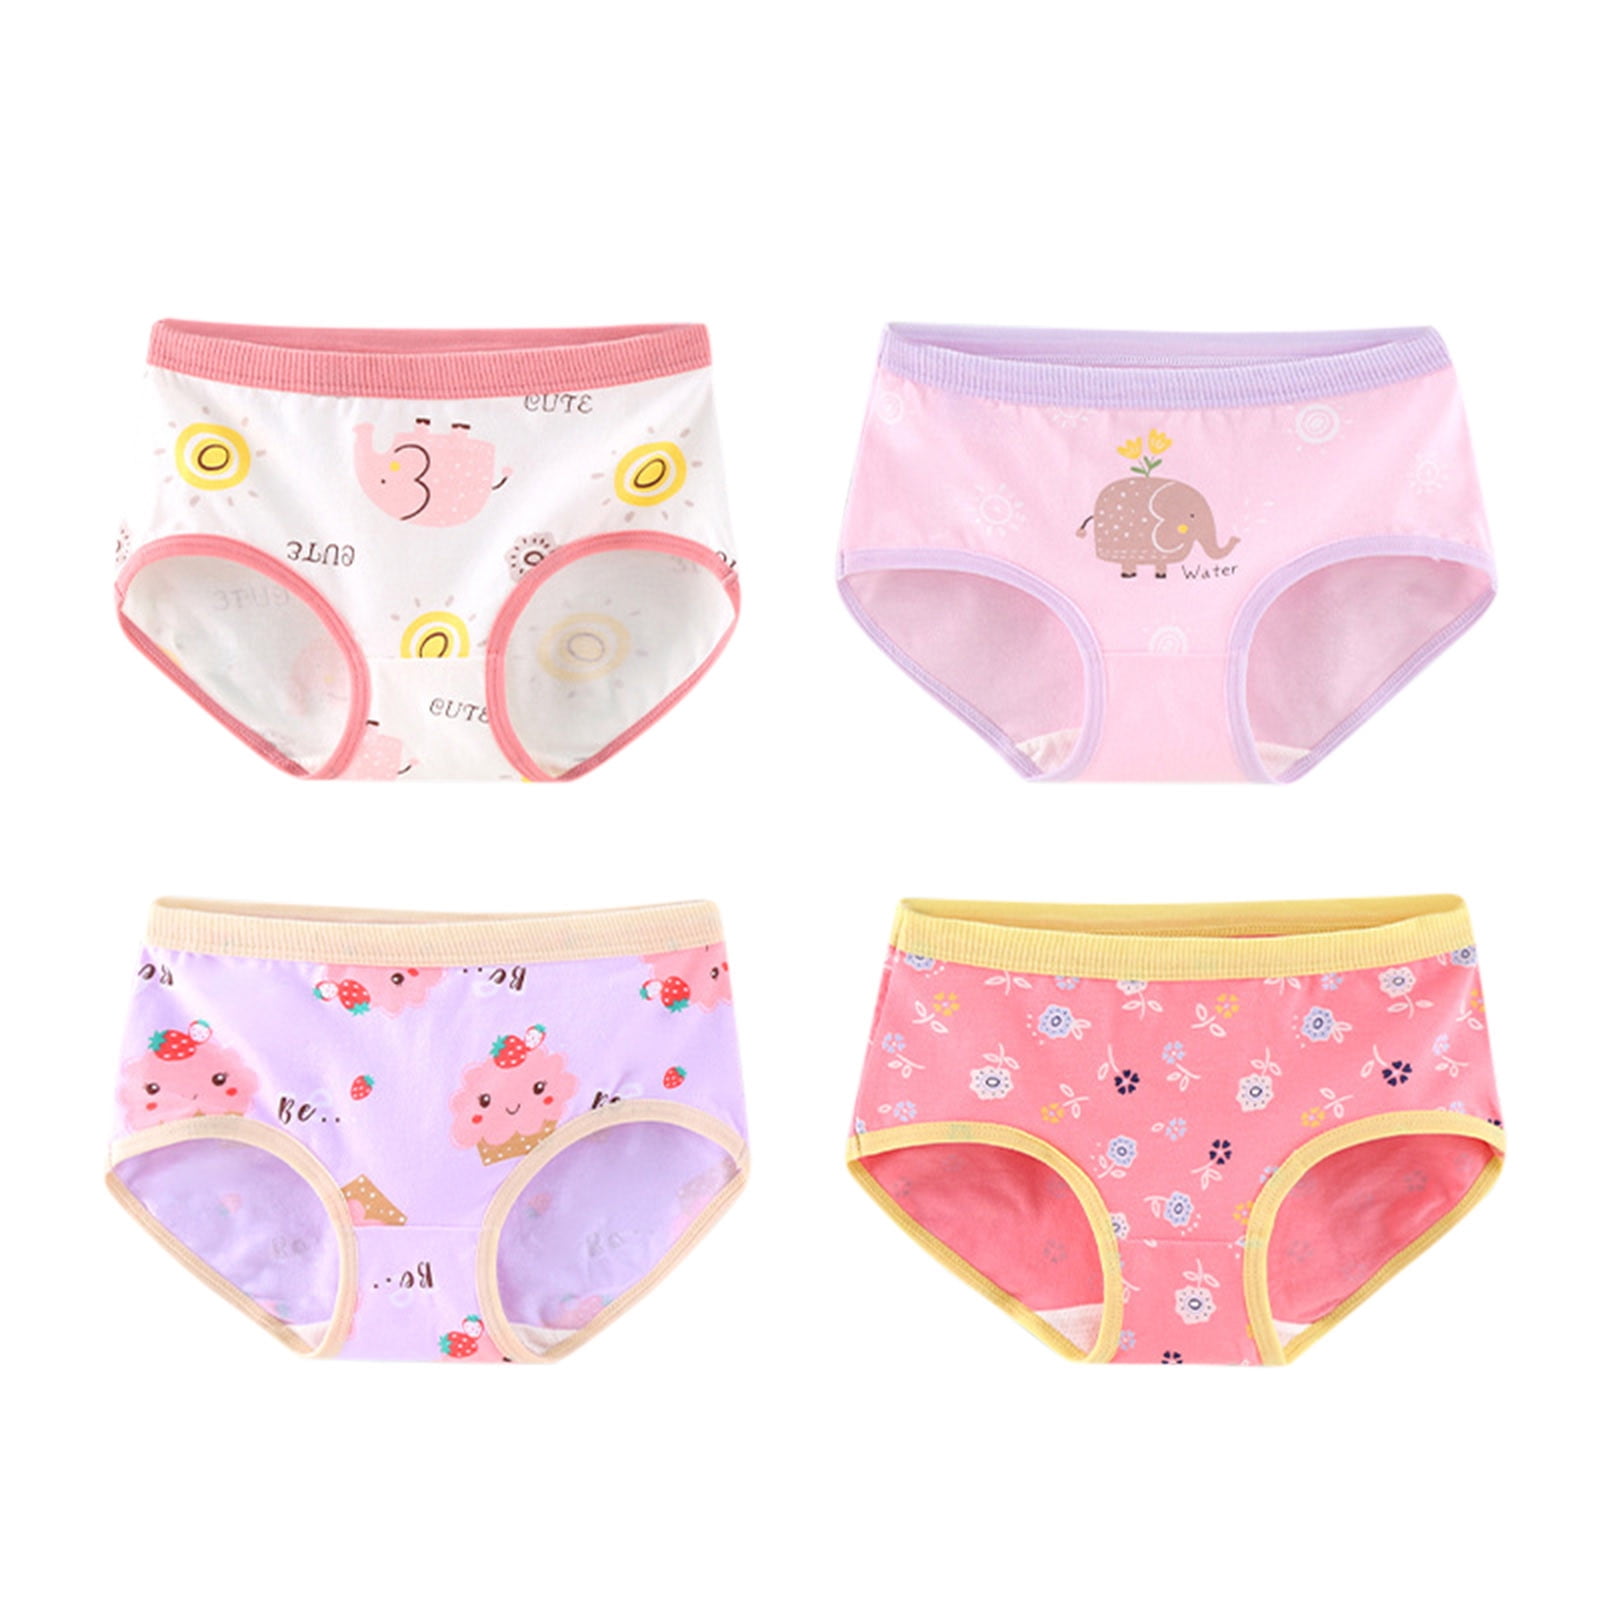 Buy China Wholesale Puberty Girl Cute Cartoon Underwear Teenage Briefs  Comfortable Panties & Puberty Girls Underwear $0.5